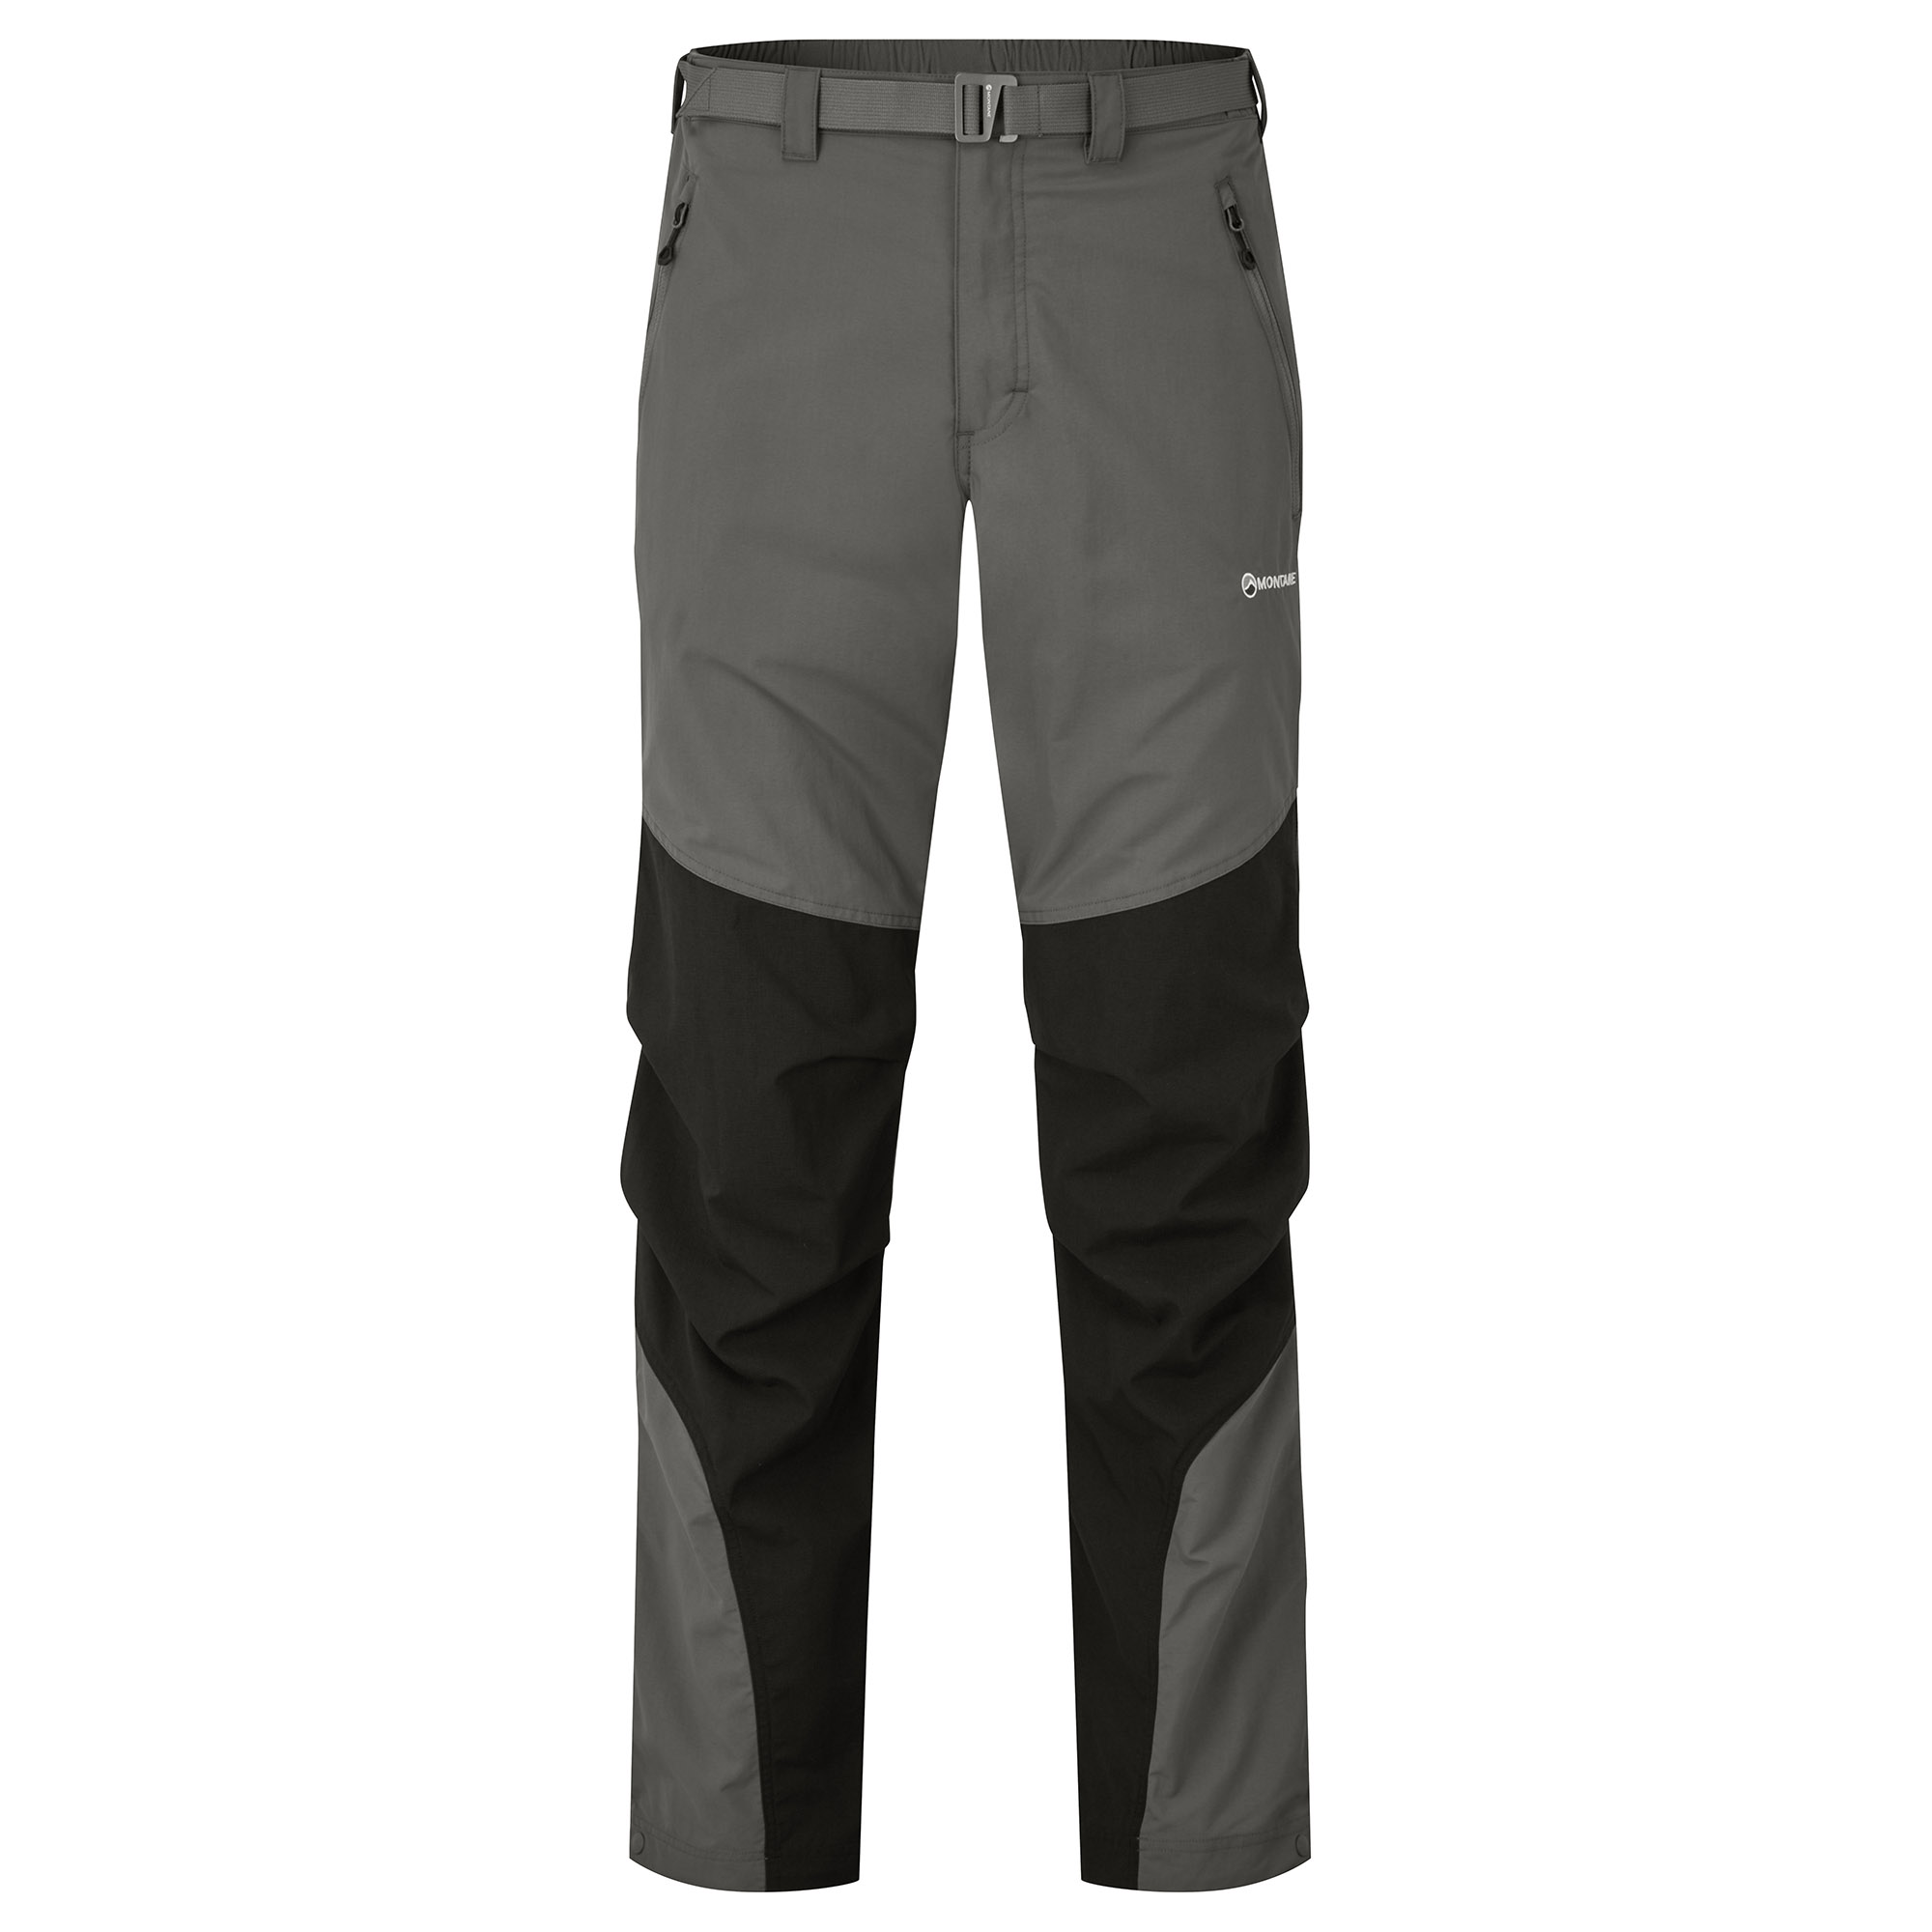 Montane pánské softshellové kalhoty Terra Pants - Prodloužené Nohavice Barva: graphite, Velikost: 36